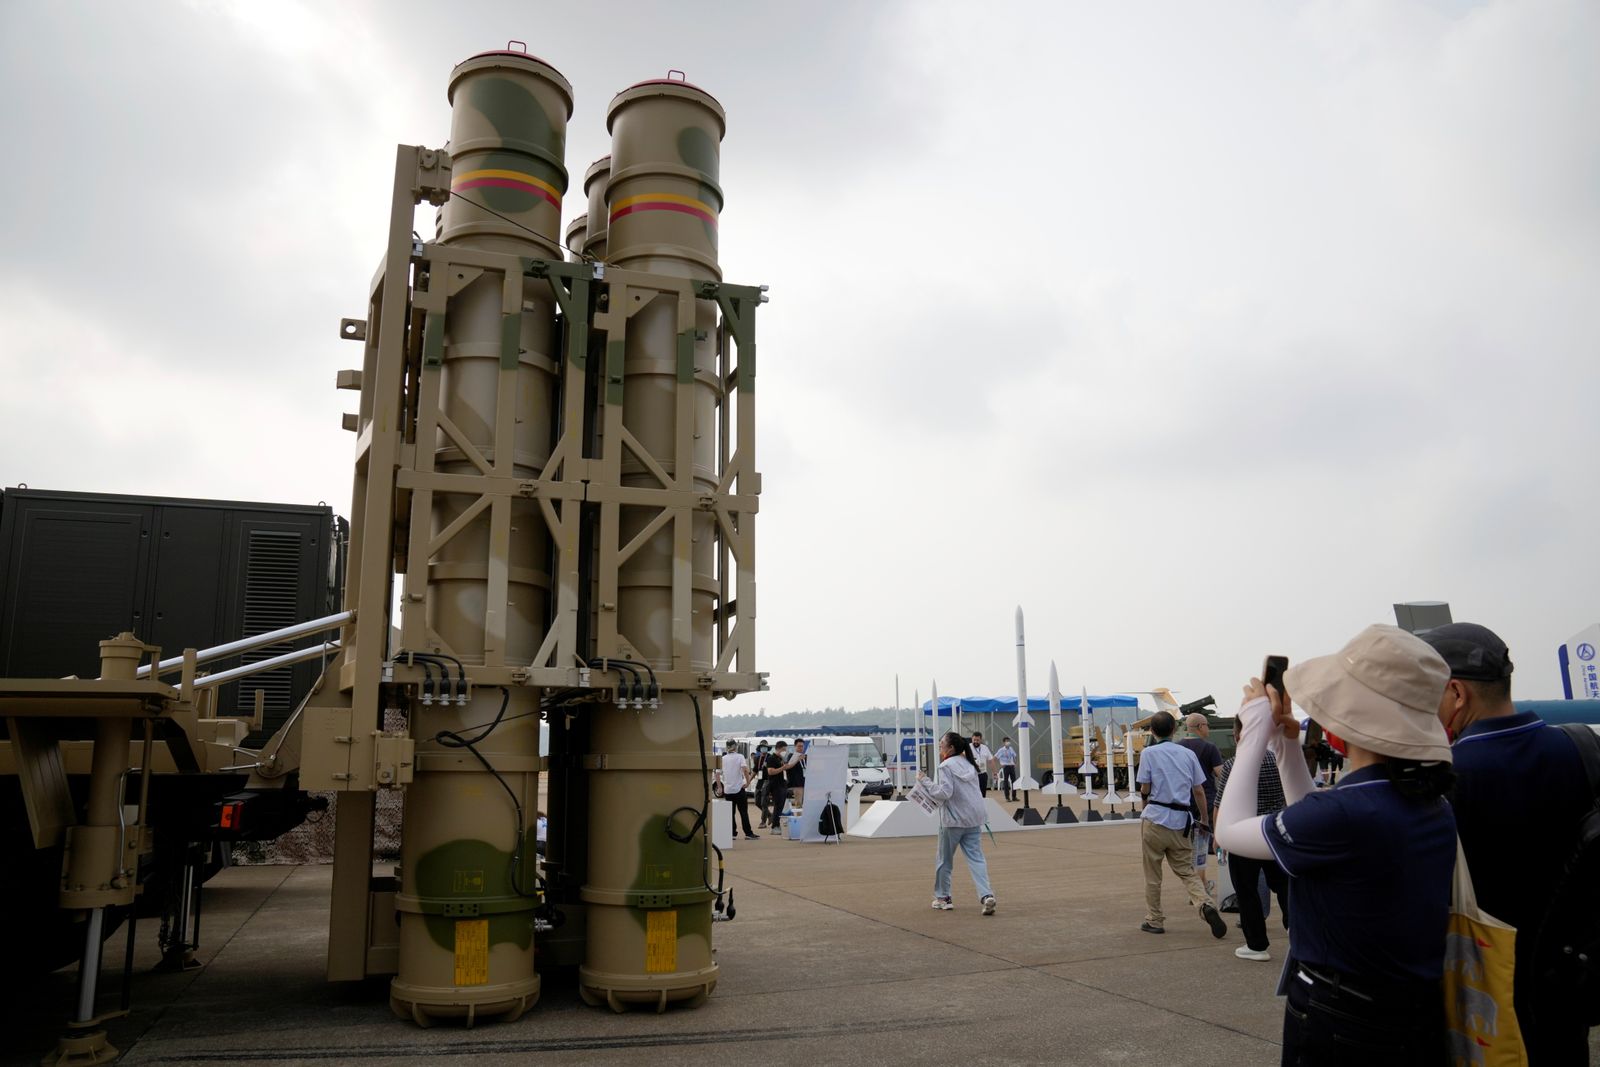 منظومة صواريخ أرض-جو LY-80 في معرض الصين الجوي - 29 سبتمبر 2021 - REUTERS